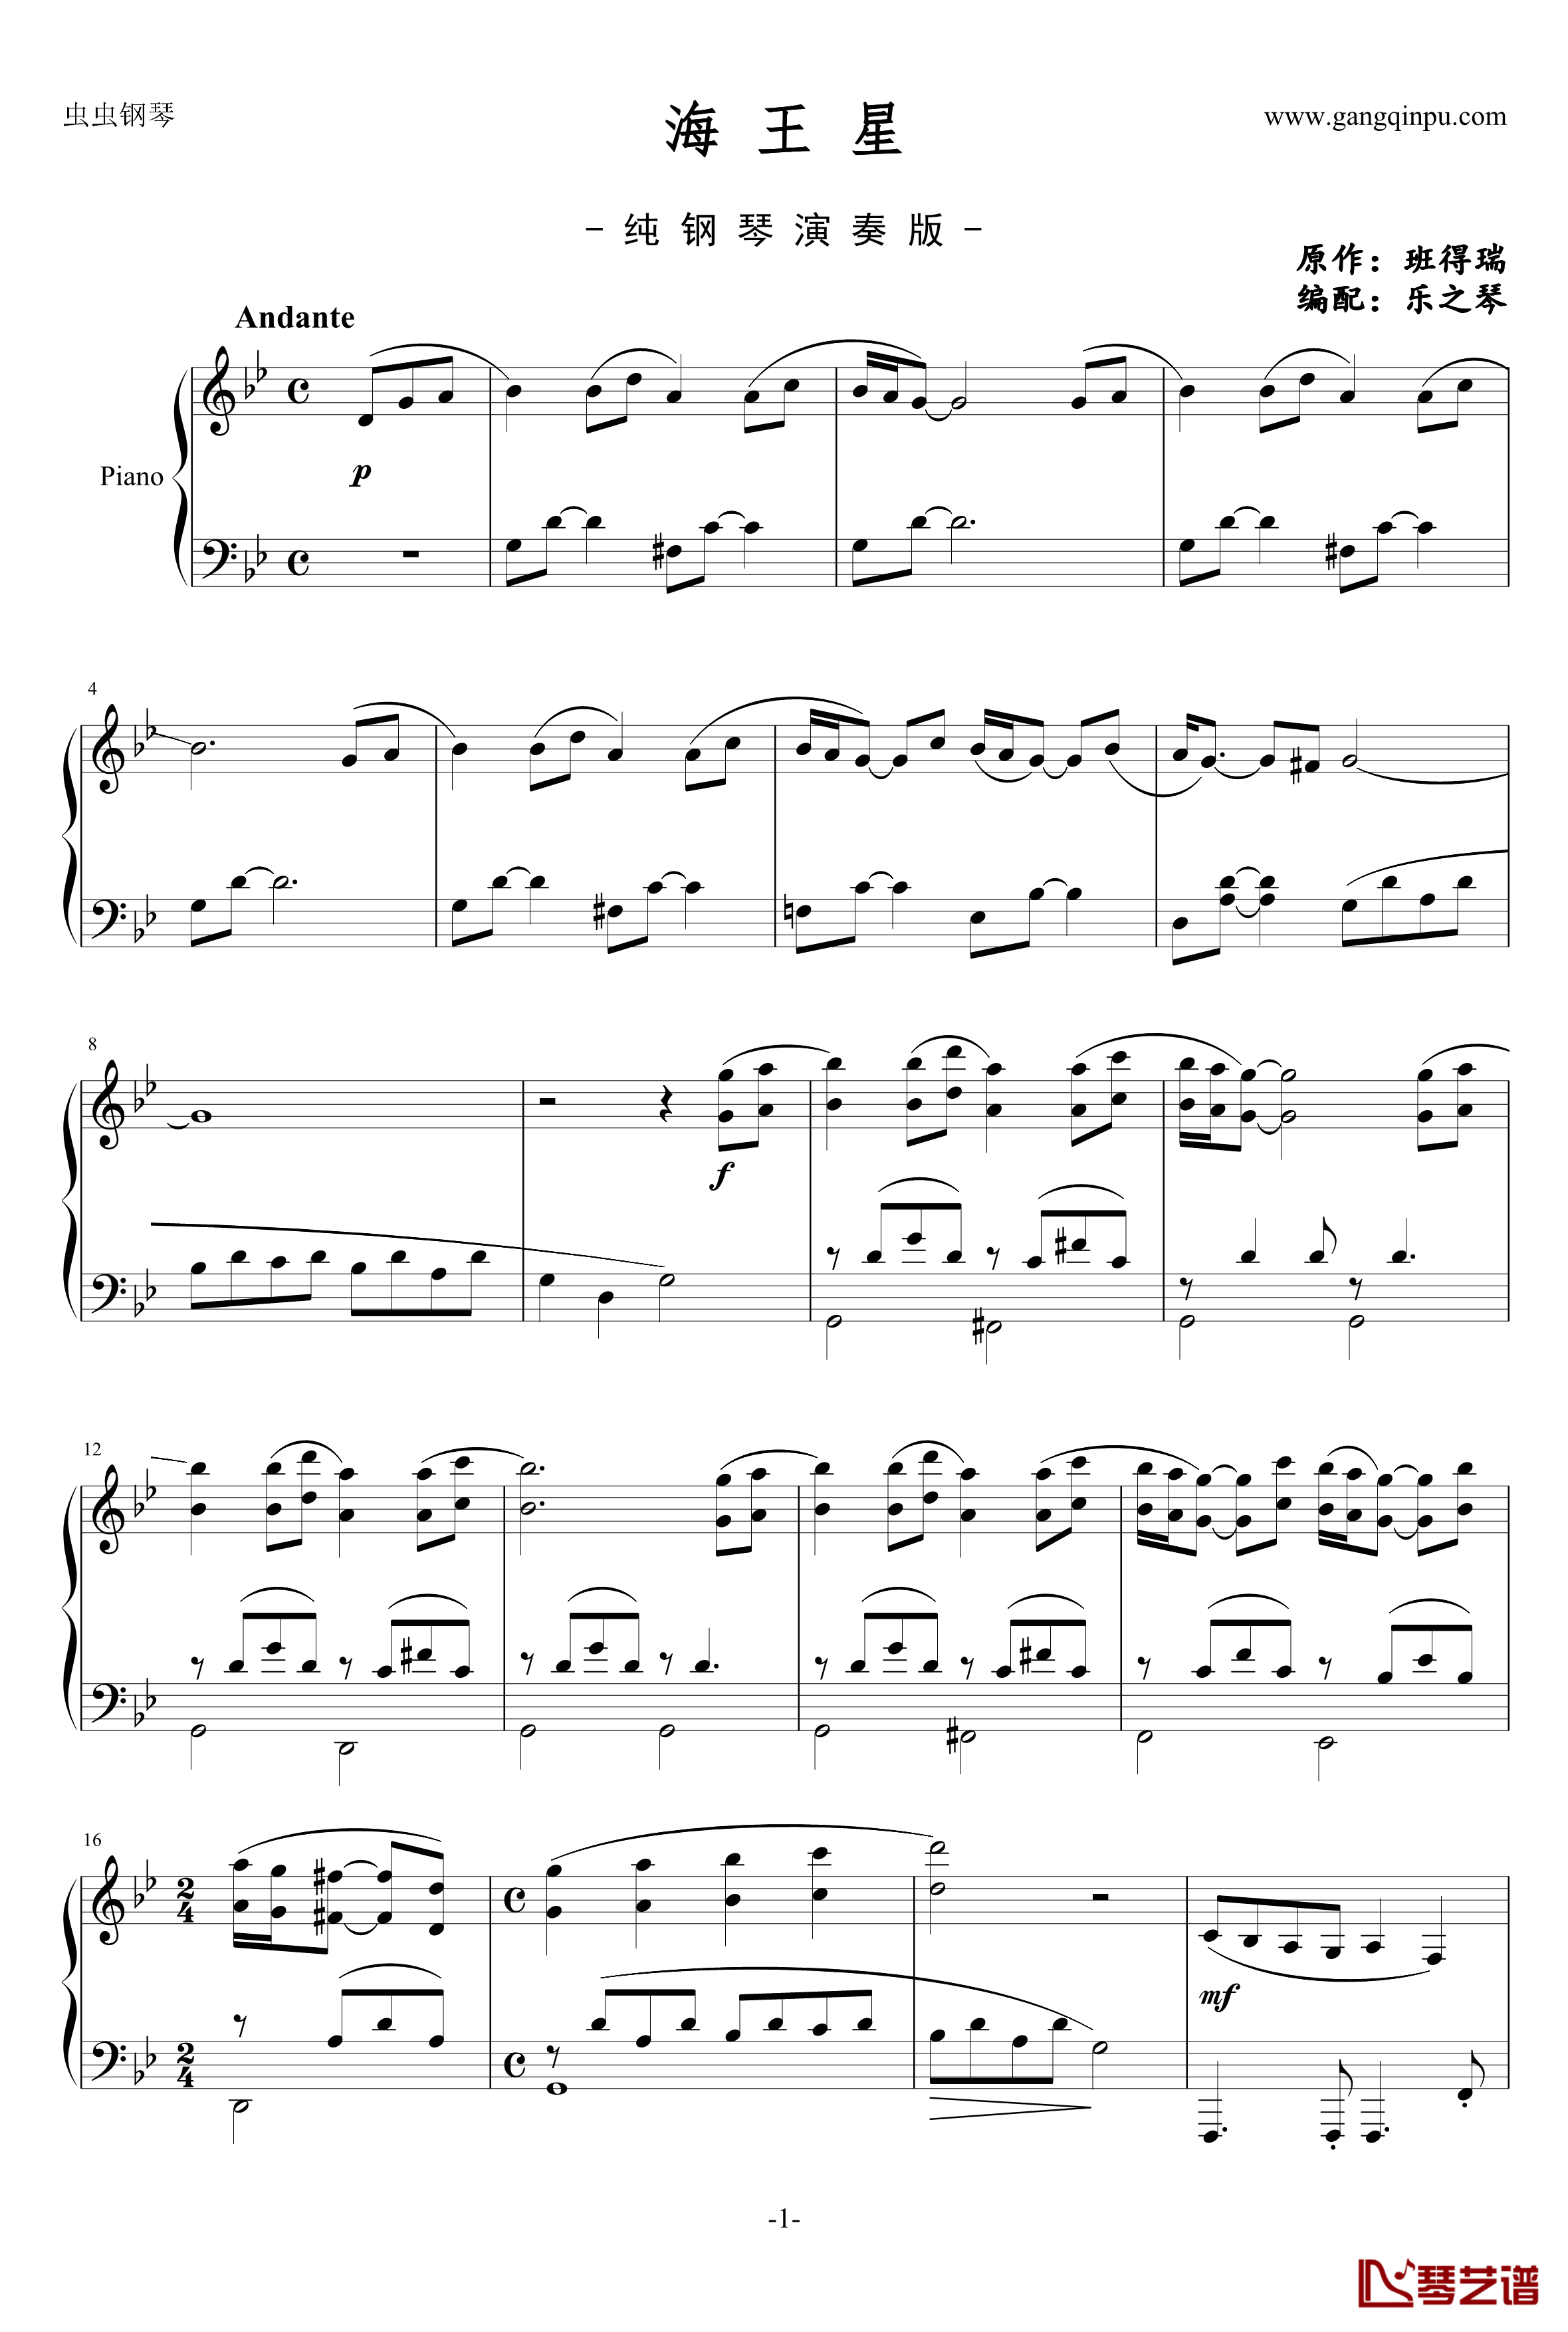 海王星钢琴谱-纯钢琴完整版-班得瑞-Bandari1